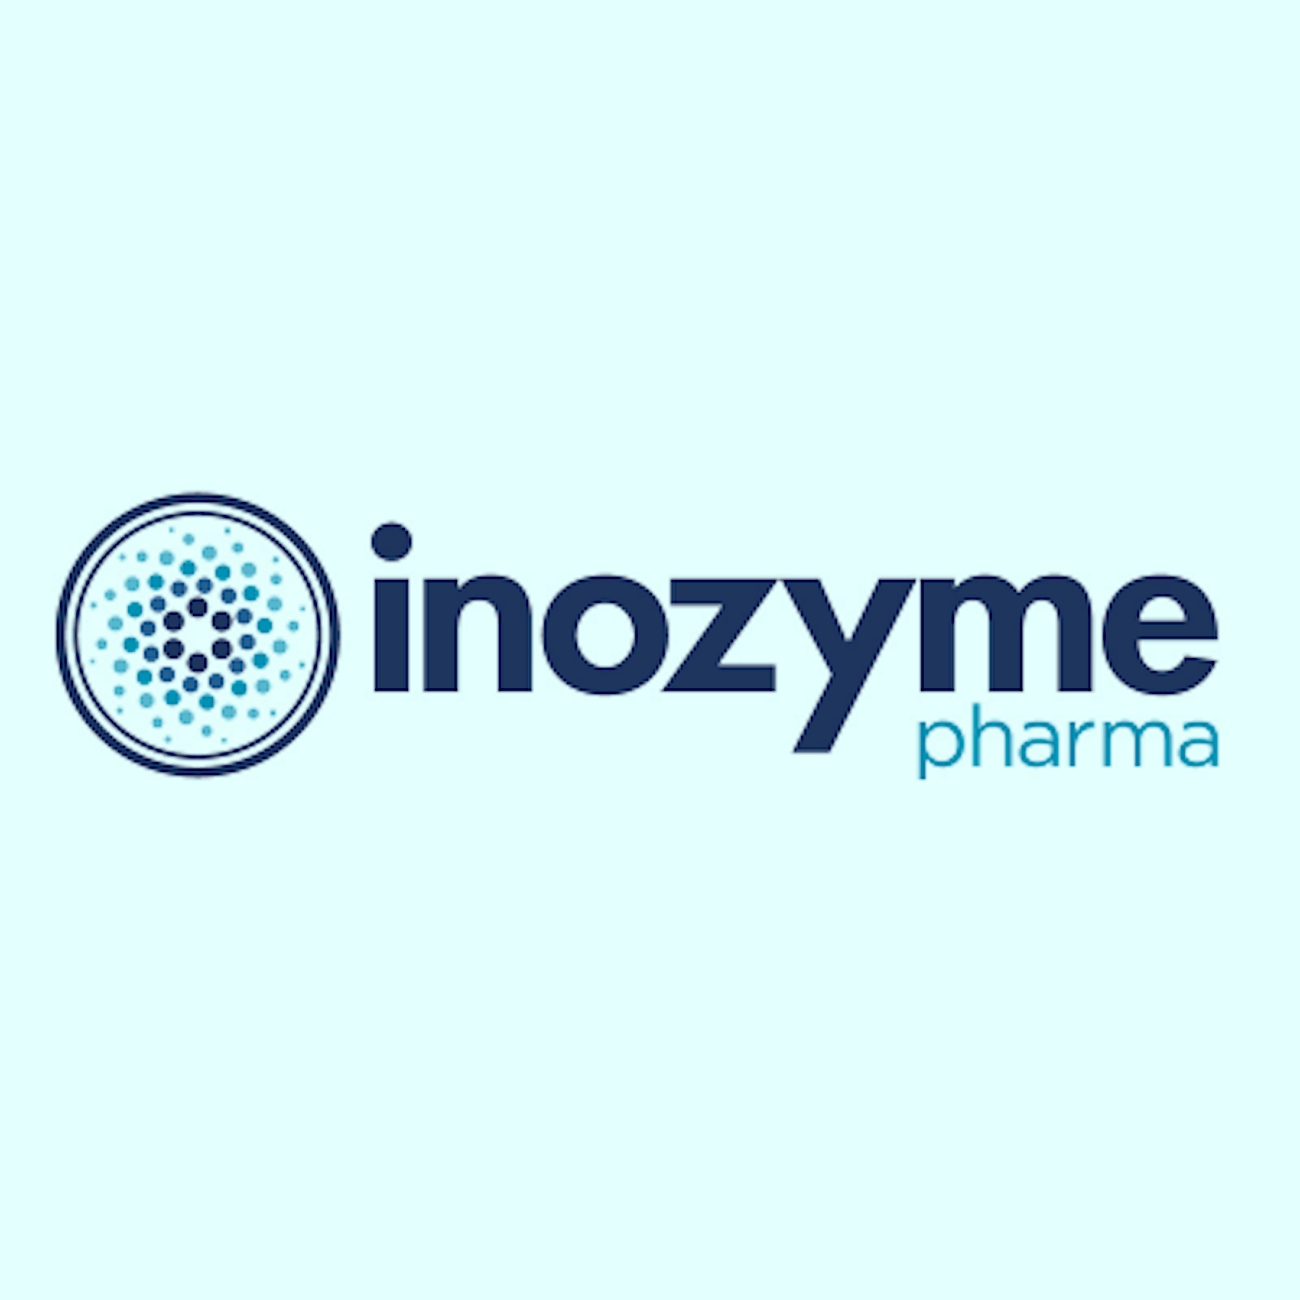 INZY logo